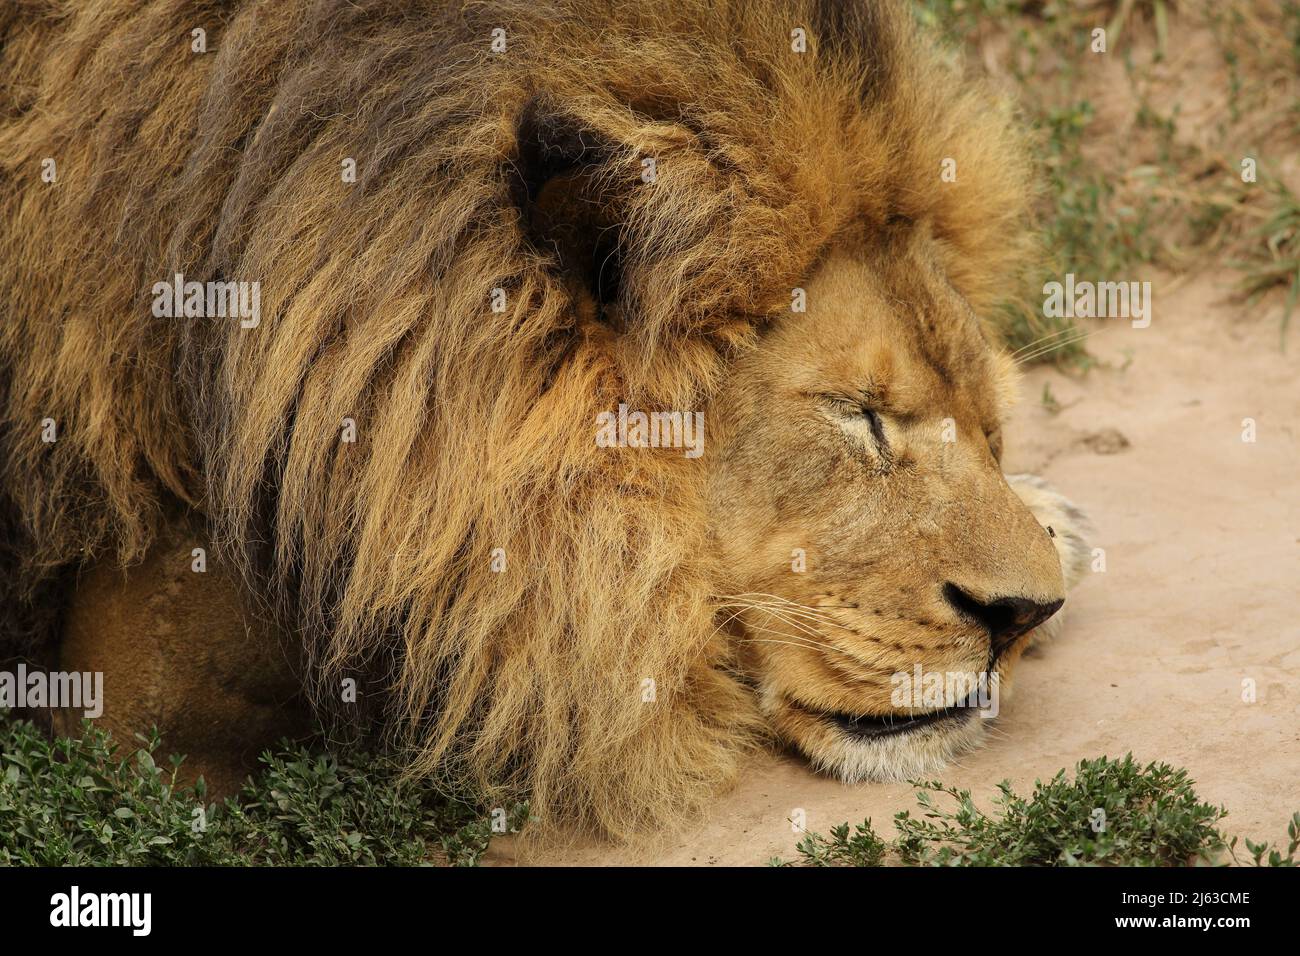 Eine Nahaufnahme eines männlichen Löwen, der schläft. Dieser Löwe hat Narben und Spuren von Kämpfen. Stockfoto